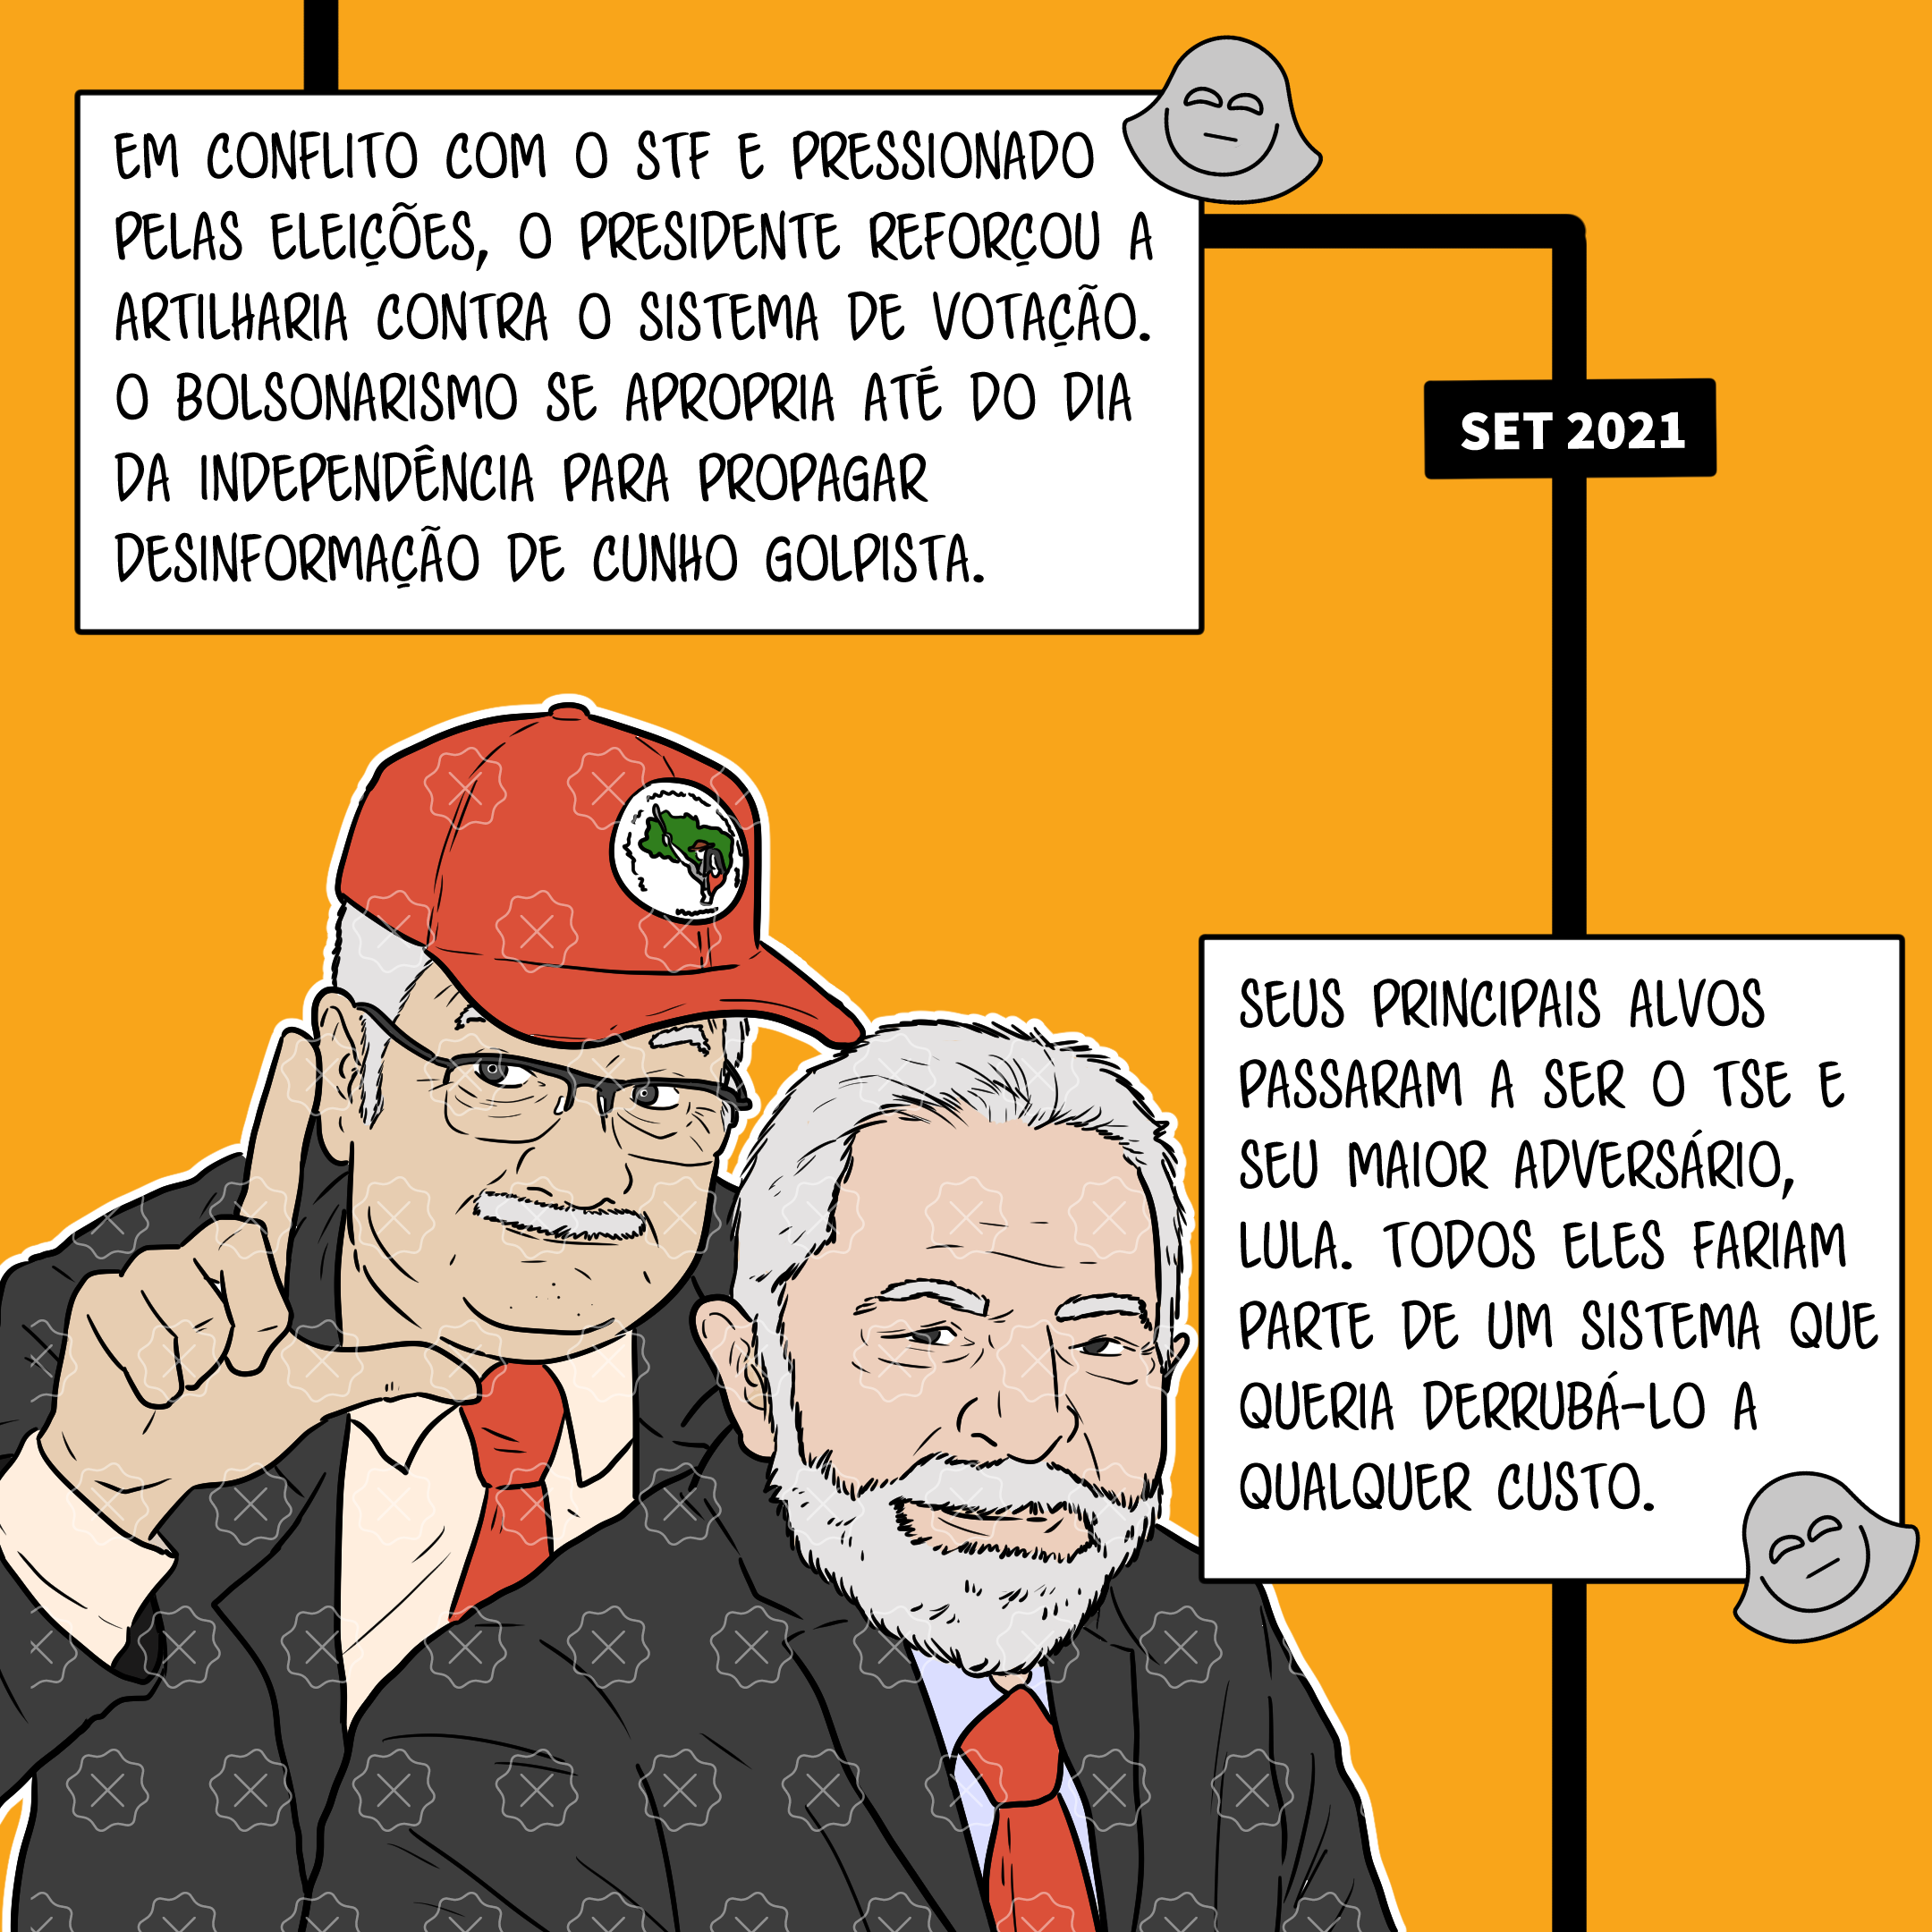 Lula e o ministro do STF Edson Fachin aparecem abraçados. Fachin usa um boné do MST e faz o sinal de um L. Legenda: Seus principais alvos passaram a ser o TSE e seu maior adversário, Lula. Todos eles fariam parte de um sistema que queria derrubá-lo a qualquer custo.